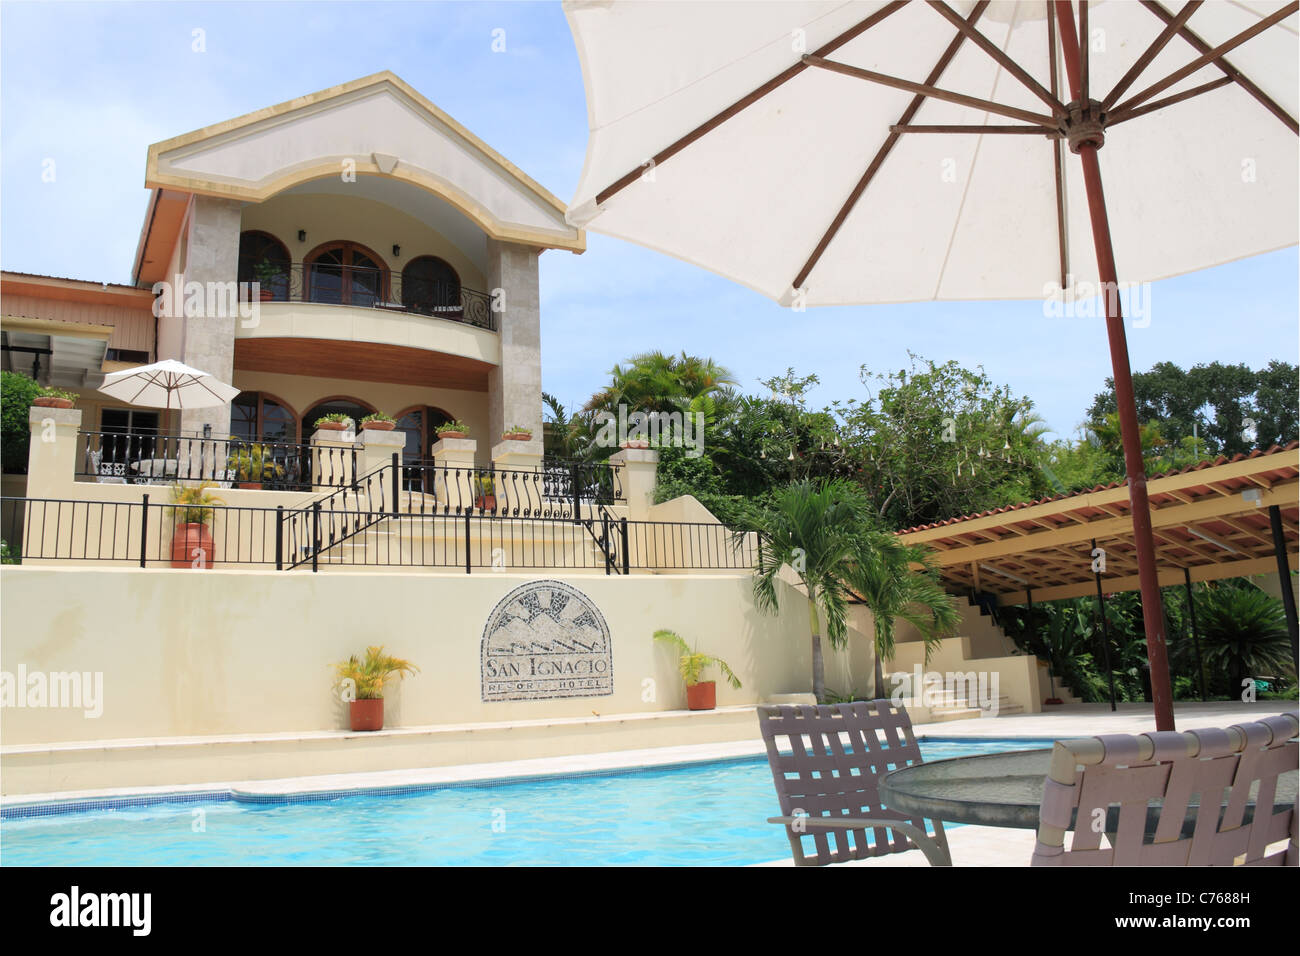 San Ignacio Resort Hotel, 18 Buena Vista St, San Ignacio, Cayo, west Belize, Central America Stock Photo